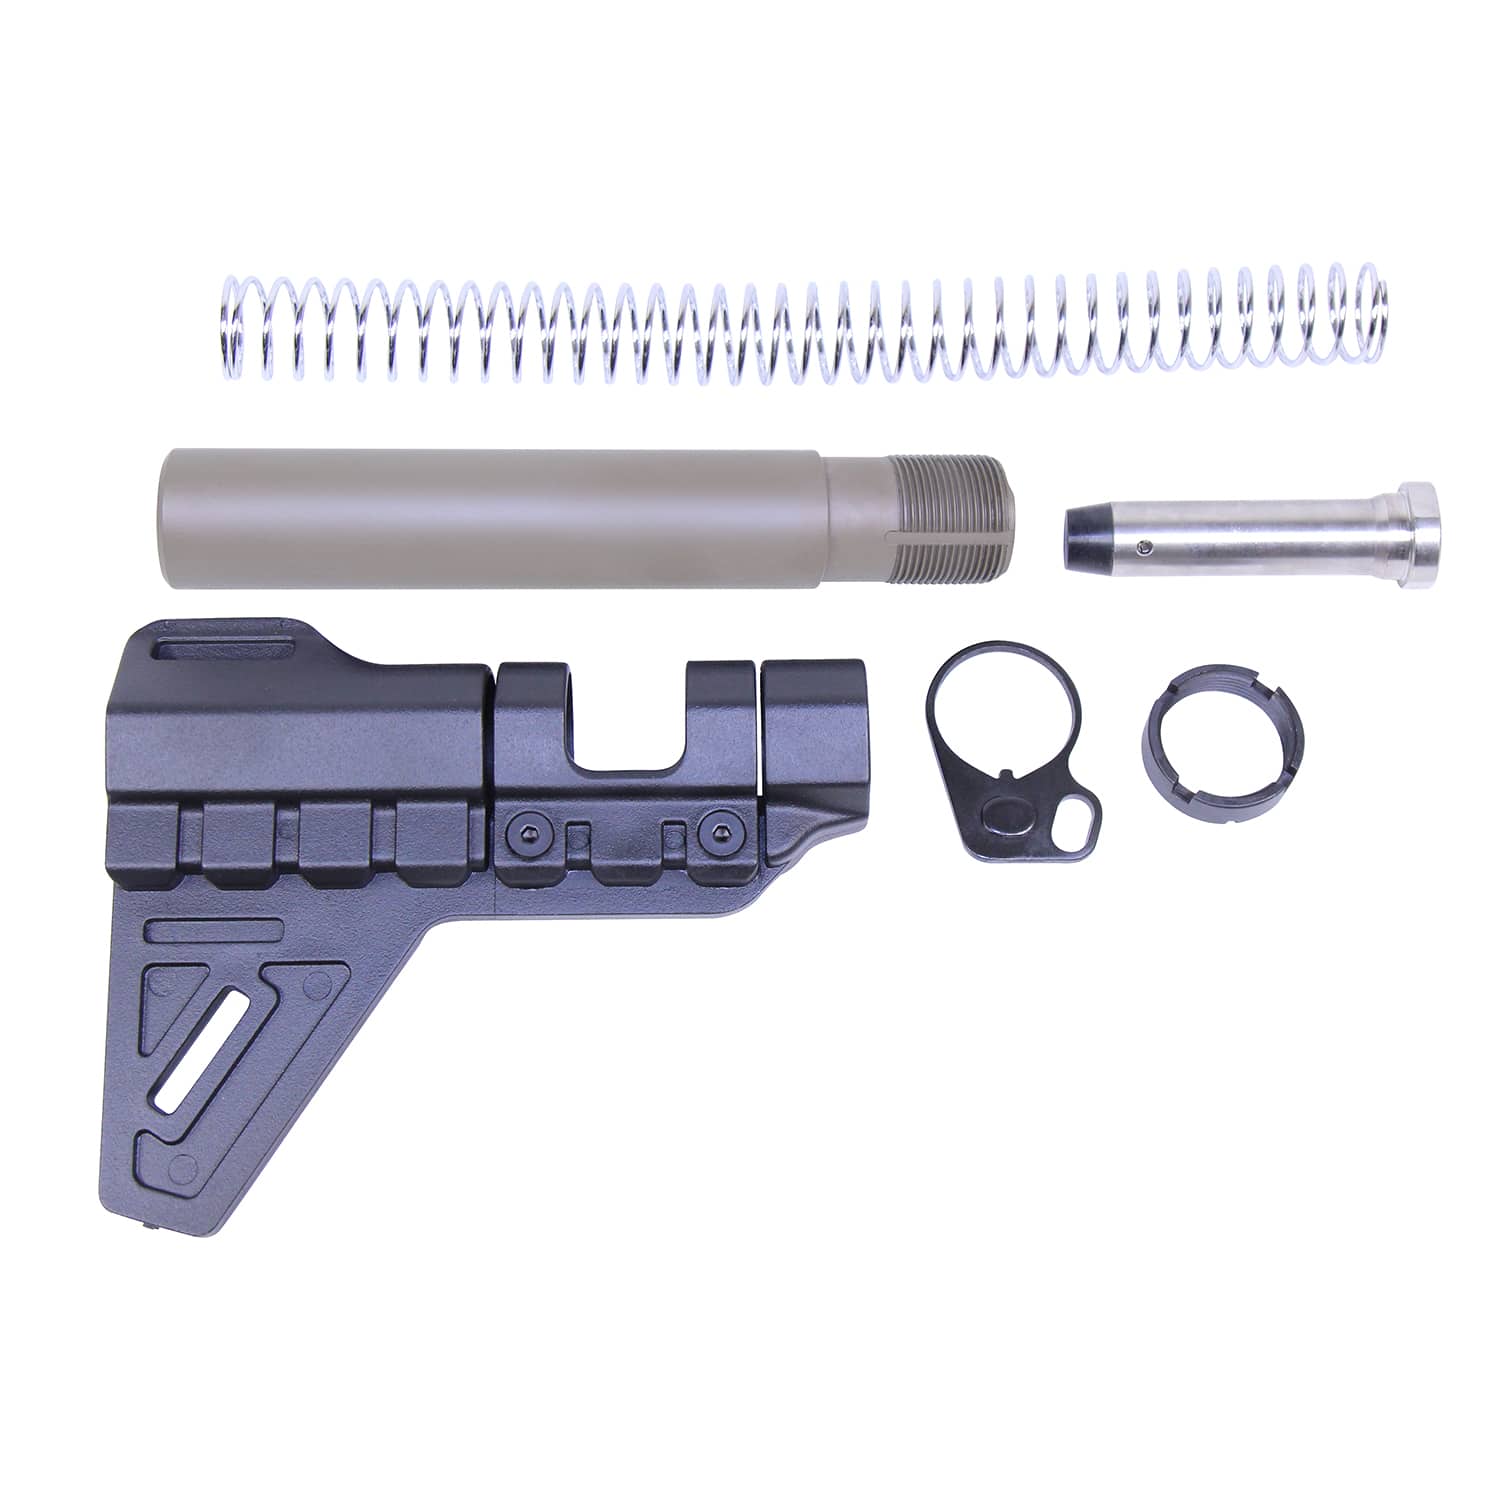 AR-15 Micro Breach Pistol Brace Set in FDE